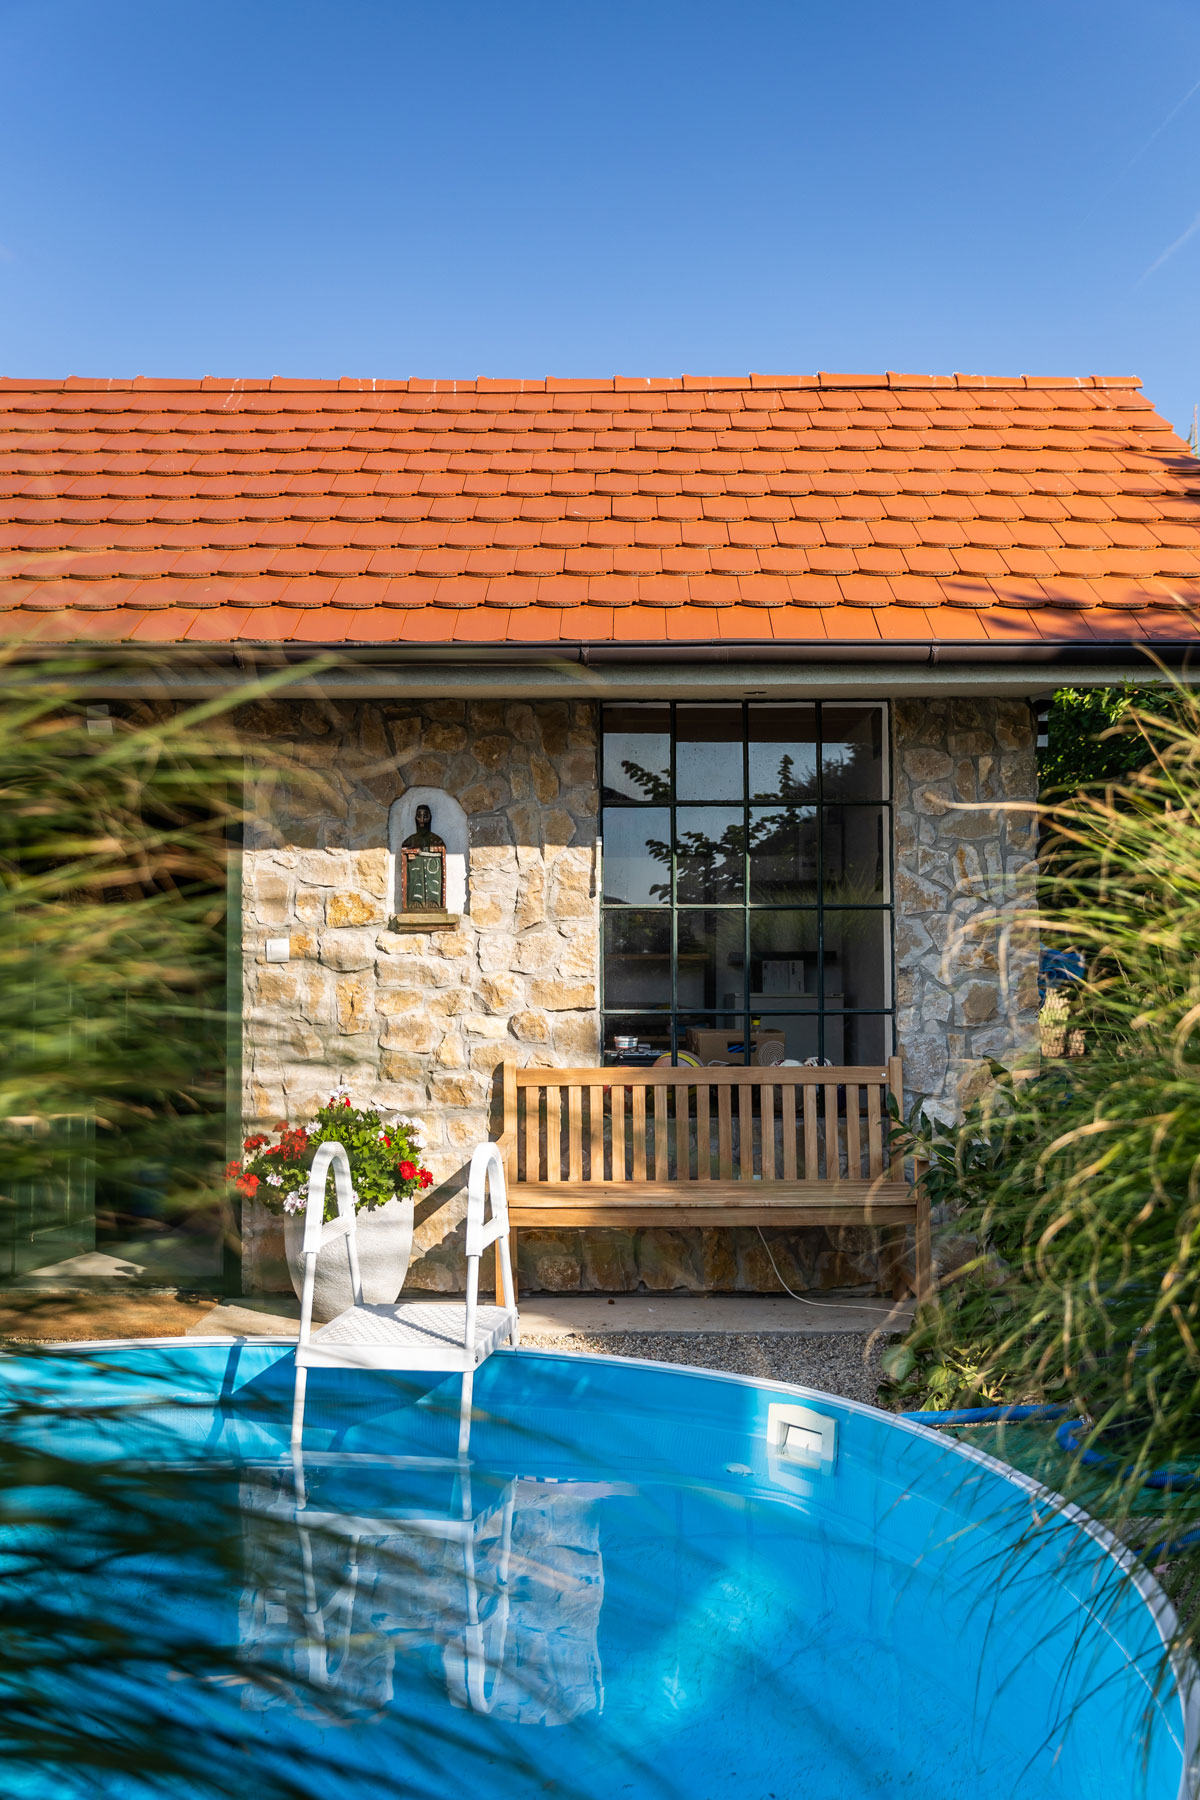 záhradný domček vo vidieckom štýle s veľkými oknami a fasádou obloženou kameňom, pred domčekom je bazén